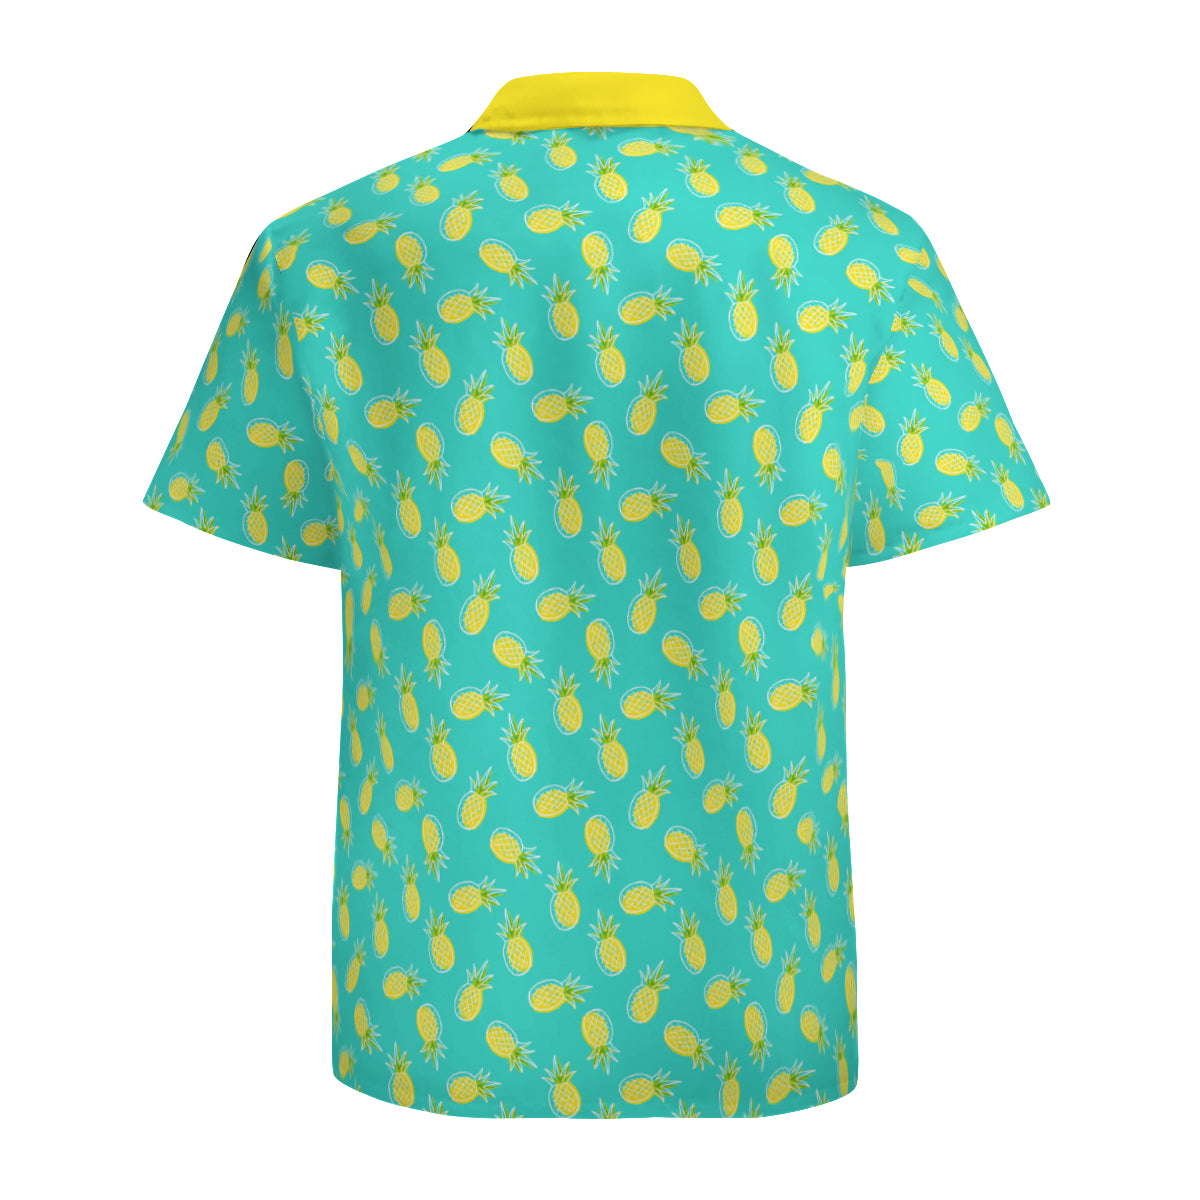 Pineapple Shirt Men, Tropical Shirt Men,Retro Hawaiian Shirt Men,Turquoise Shirt Men, 60s Style Top,Retro Shirt,Vintage Style Pineapple Top